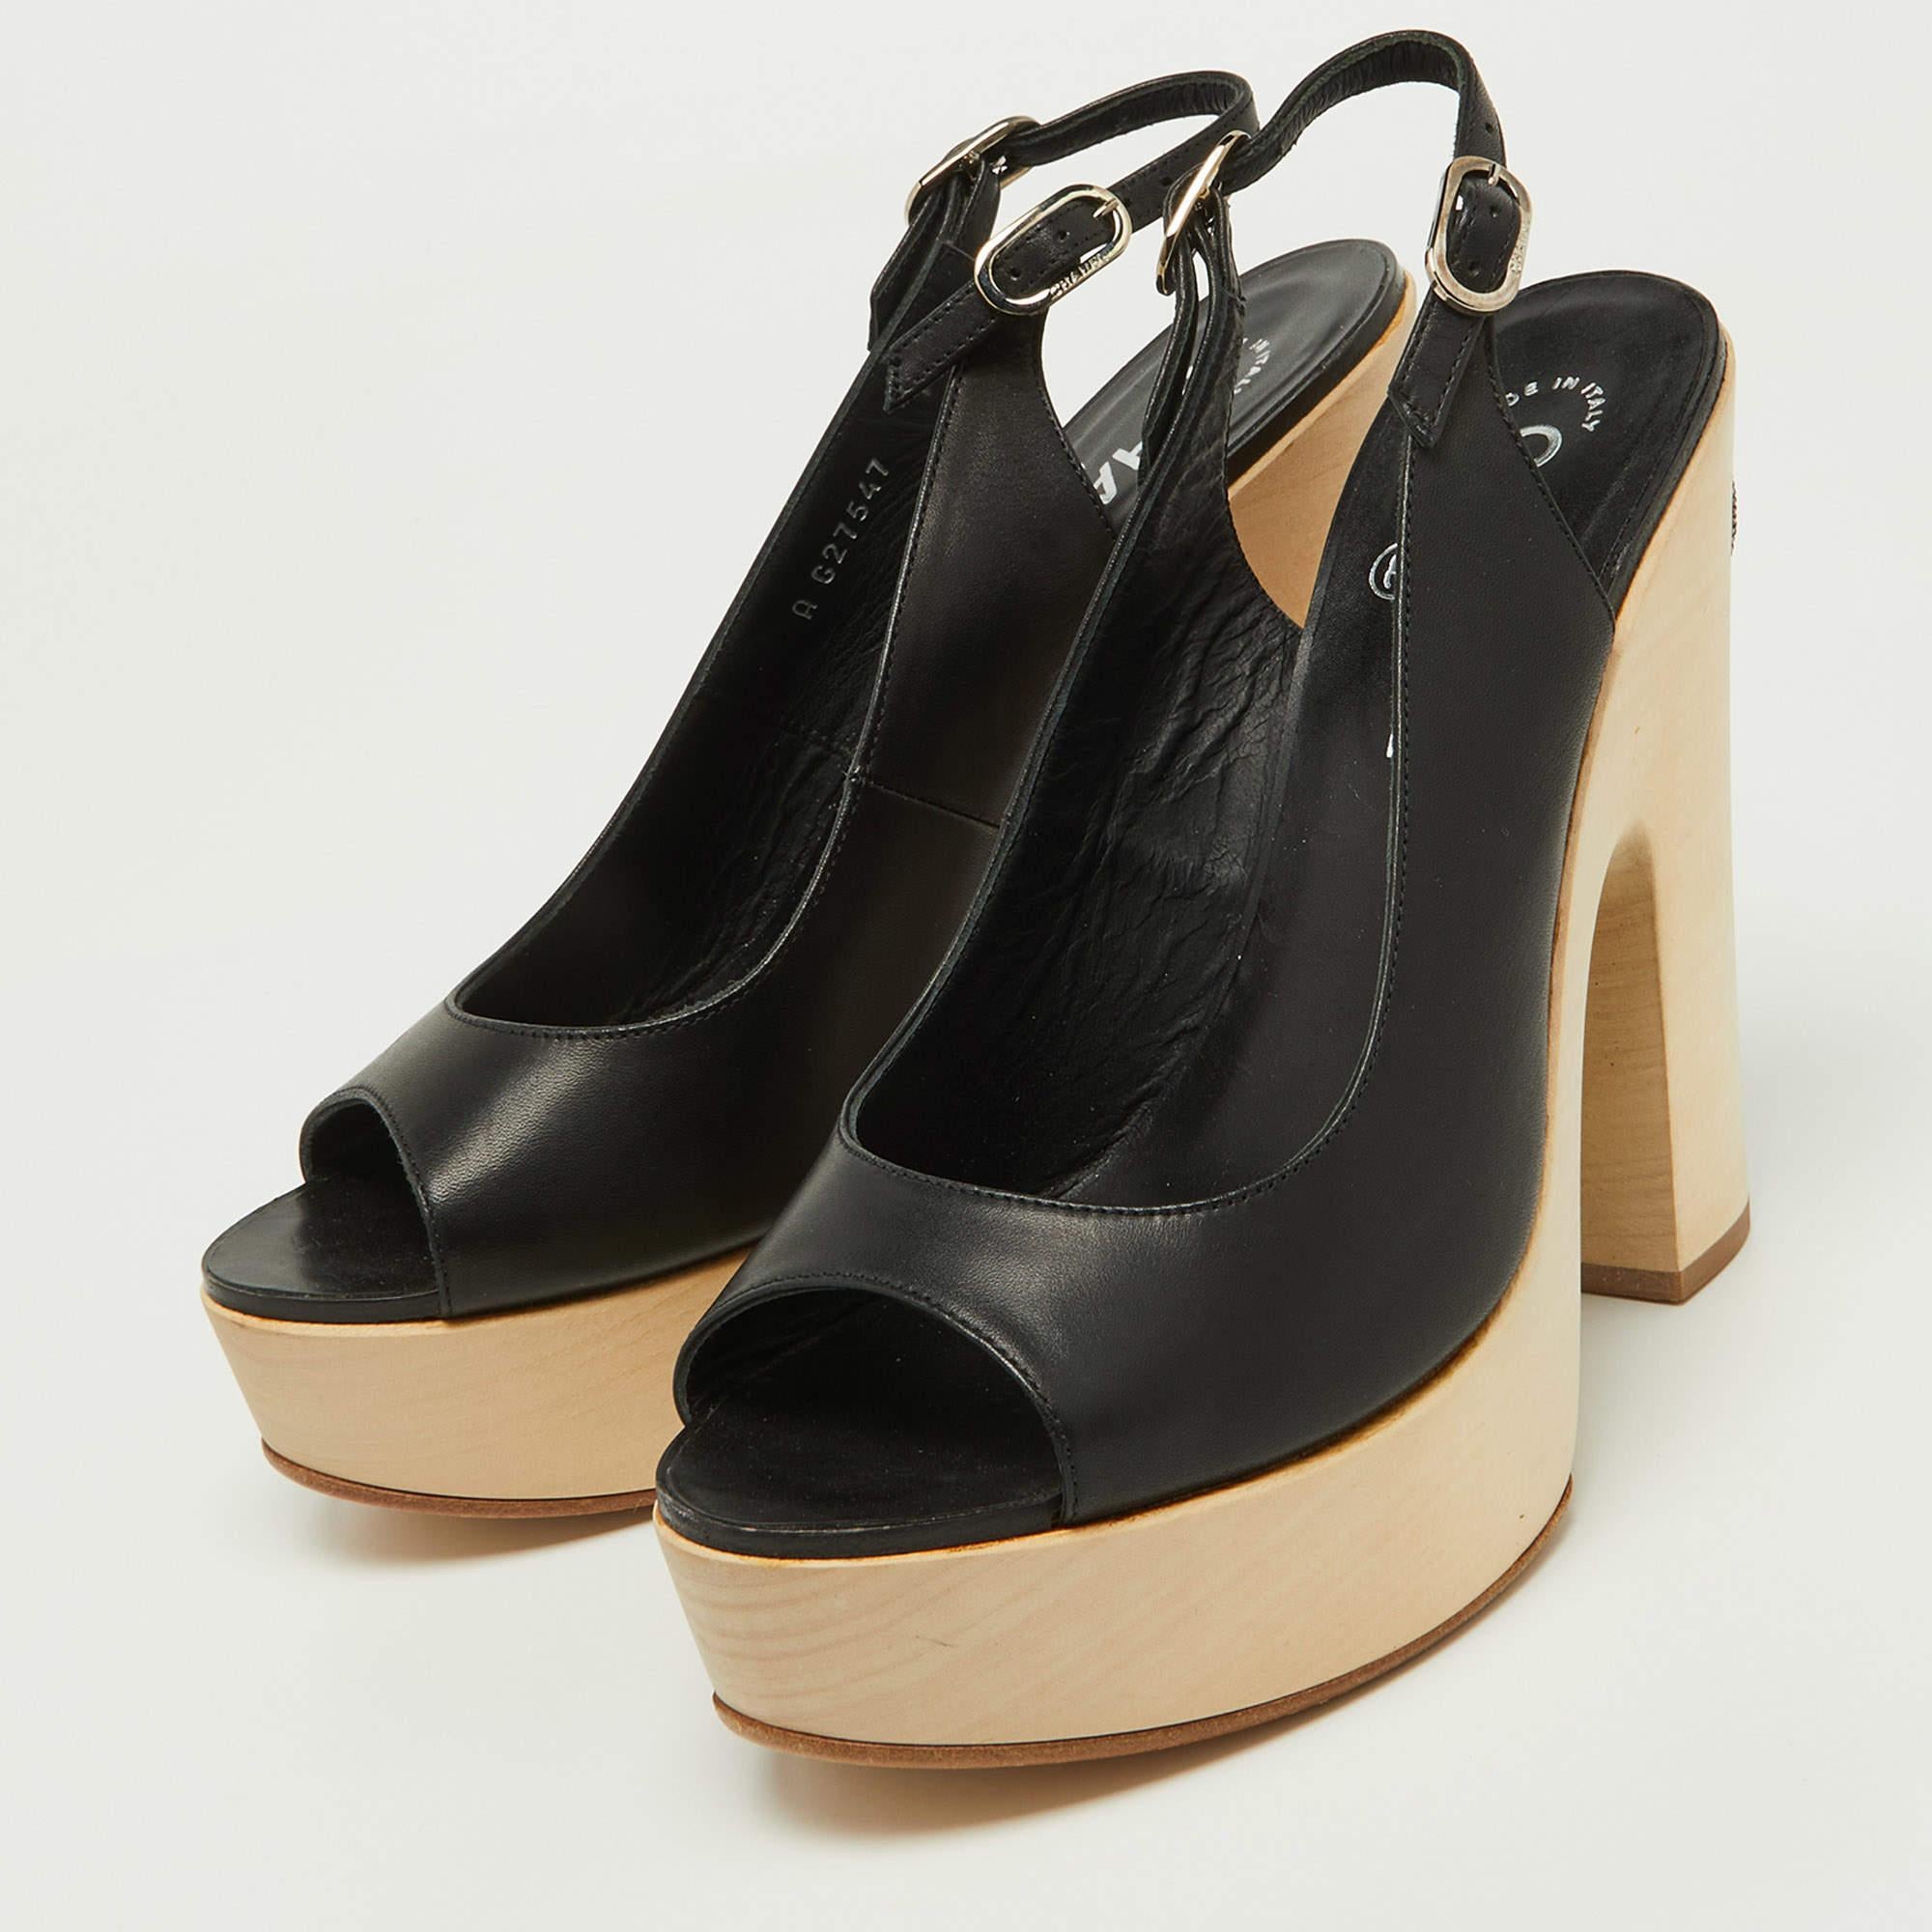 Chanel Black Leather Wooden Block Heel Slingback Platform Pumps Size 39 For Sale 1